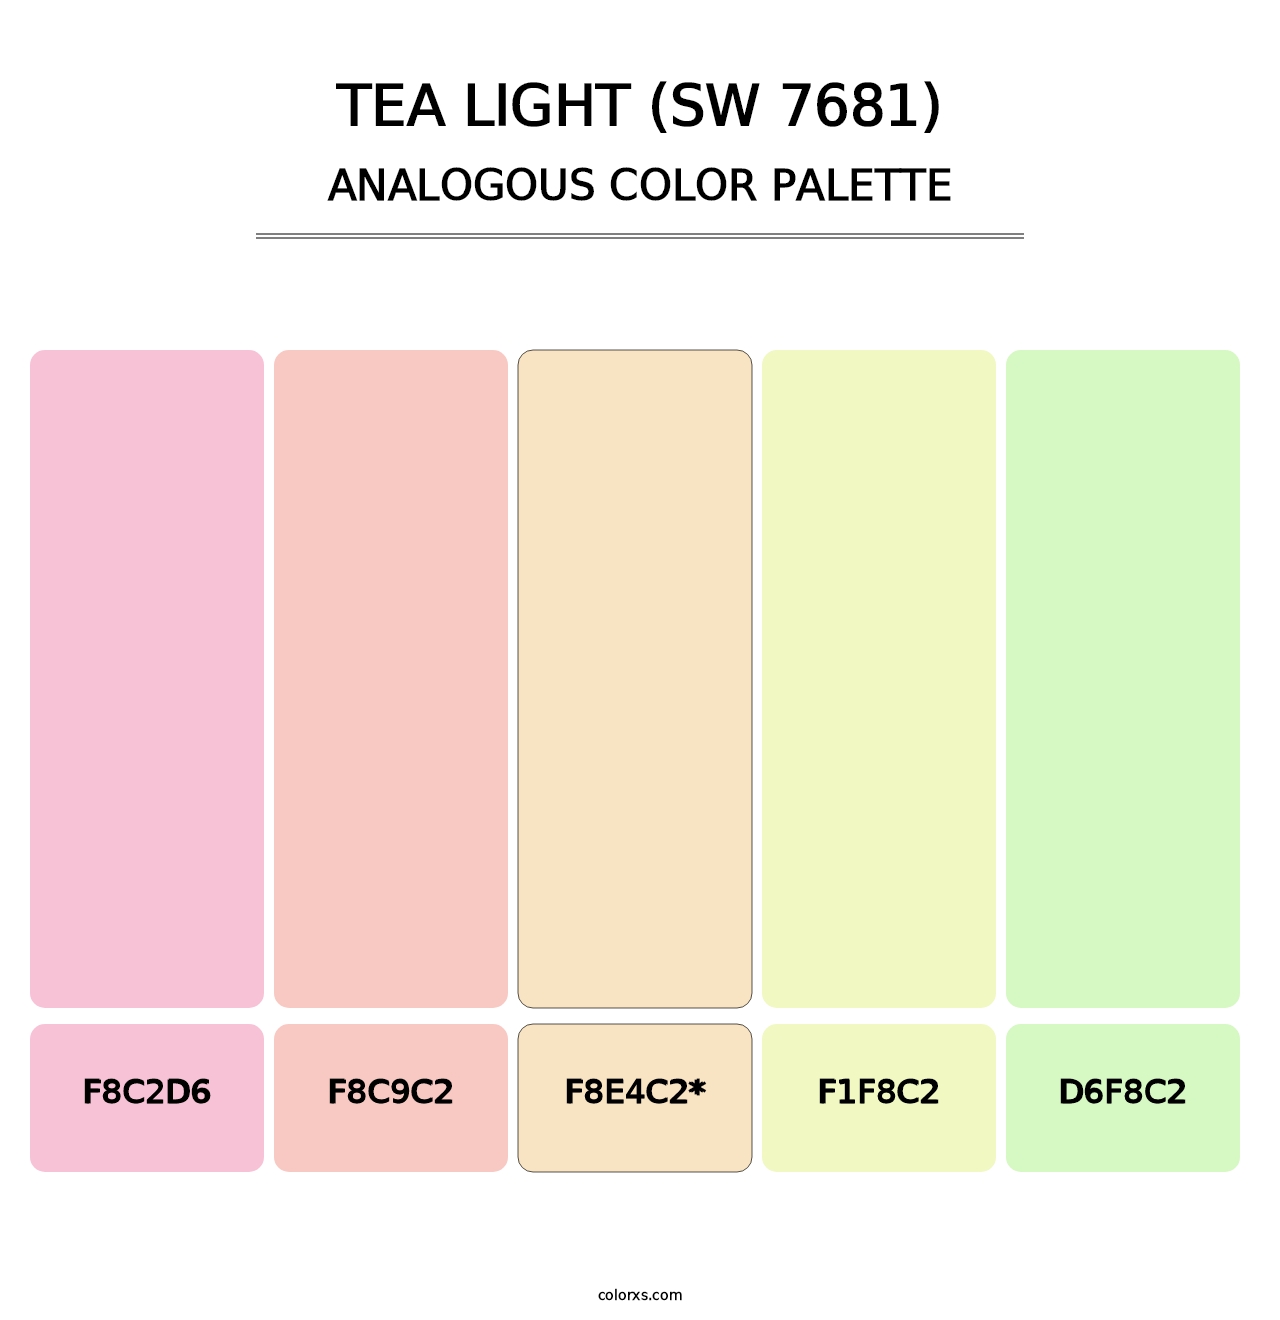 Tea Light (SW 7681) - Analogous Color Palette